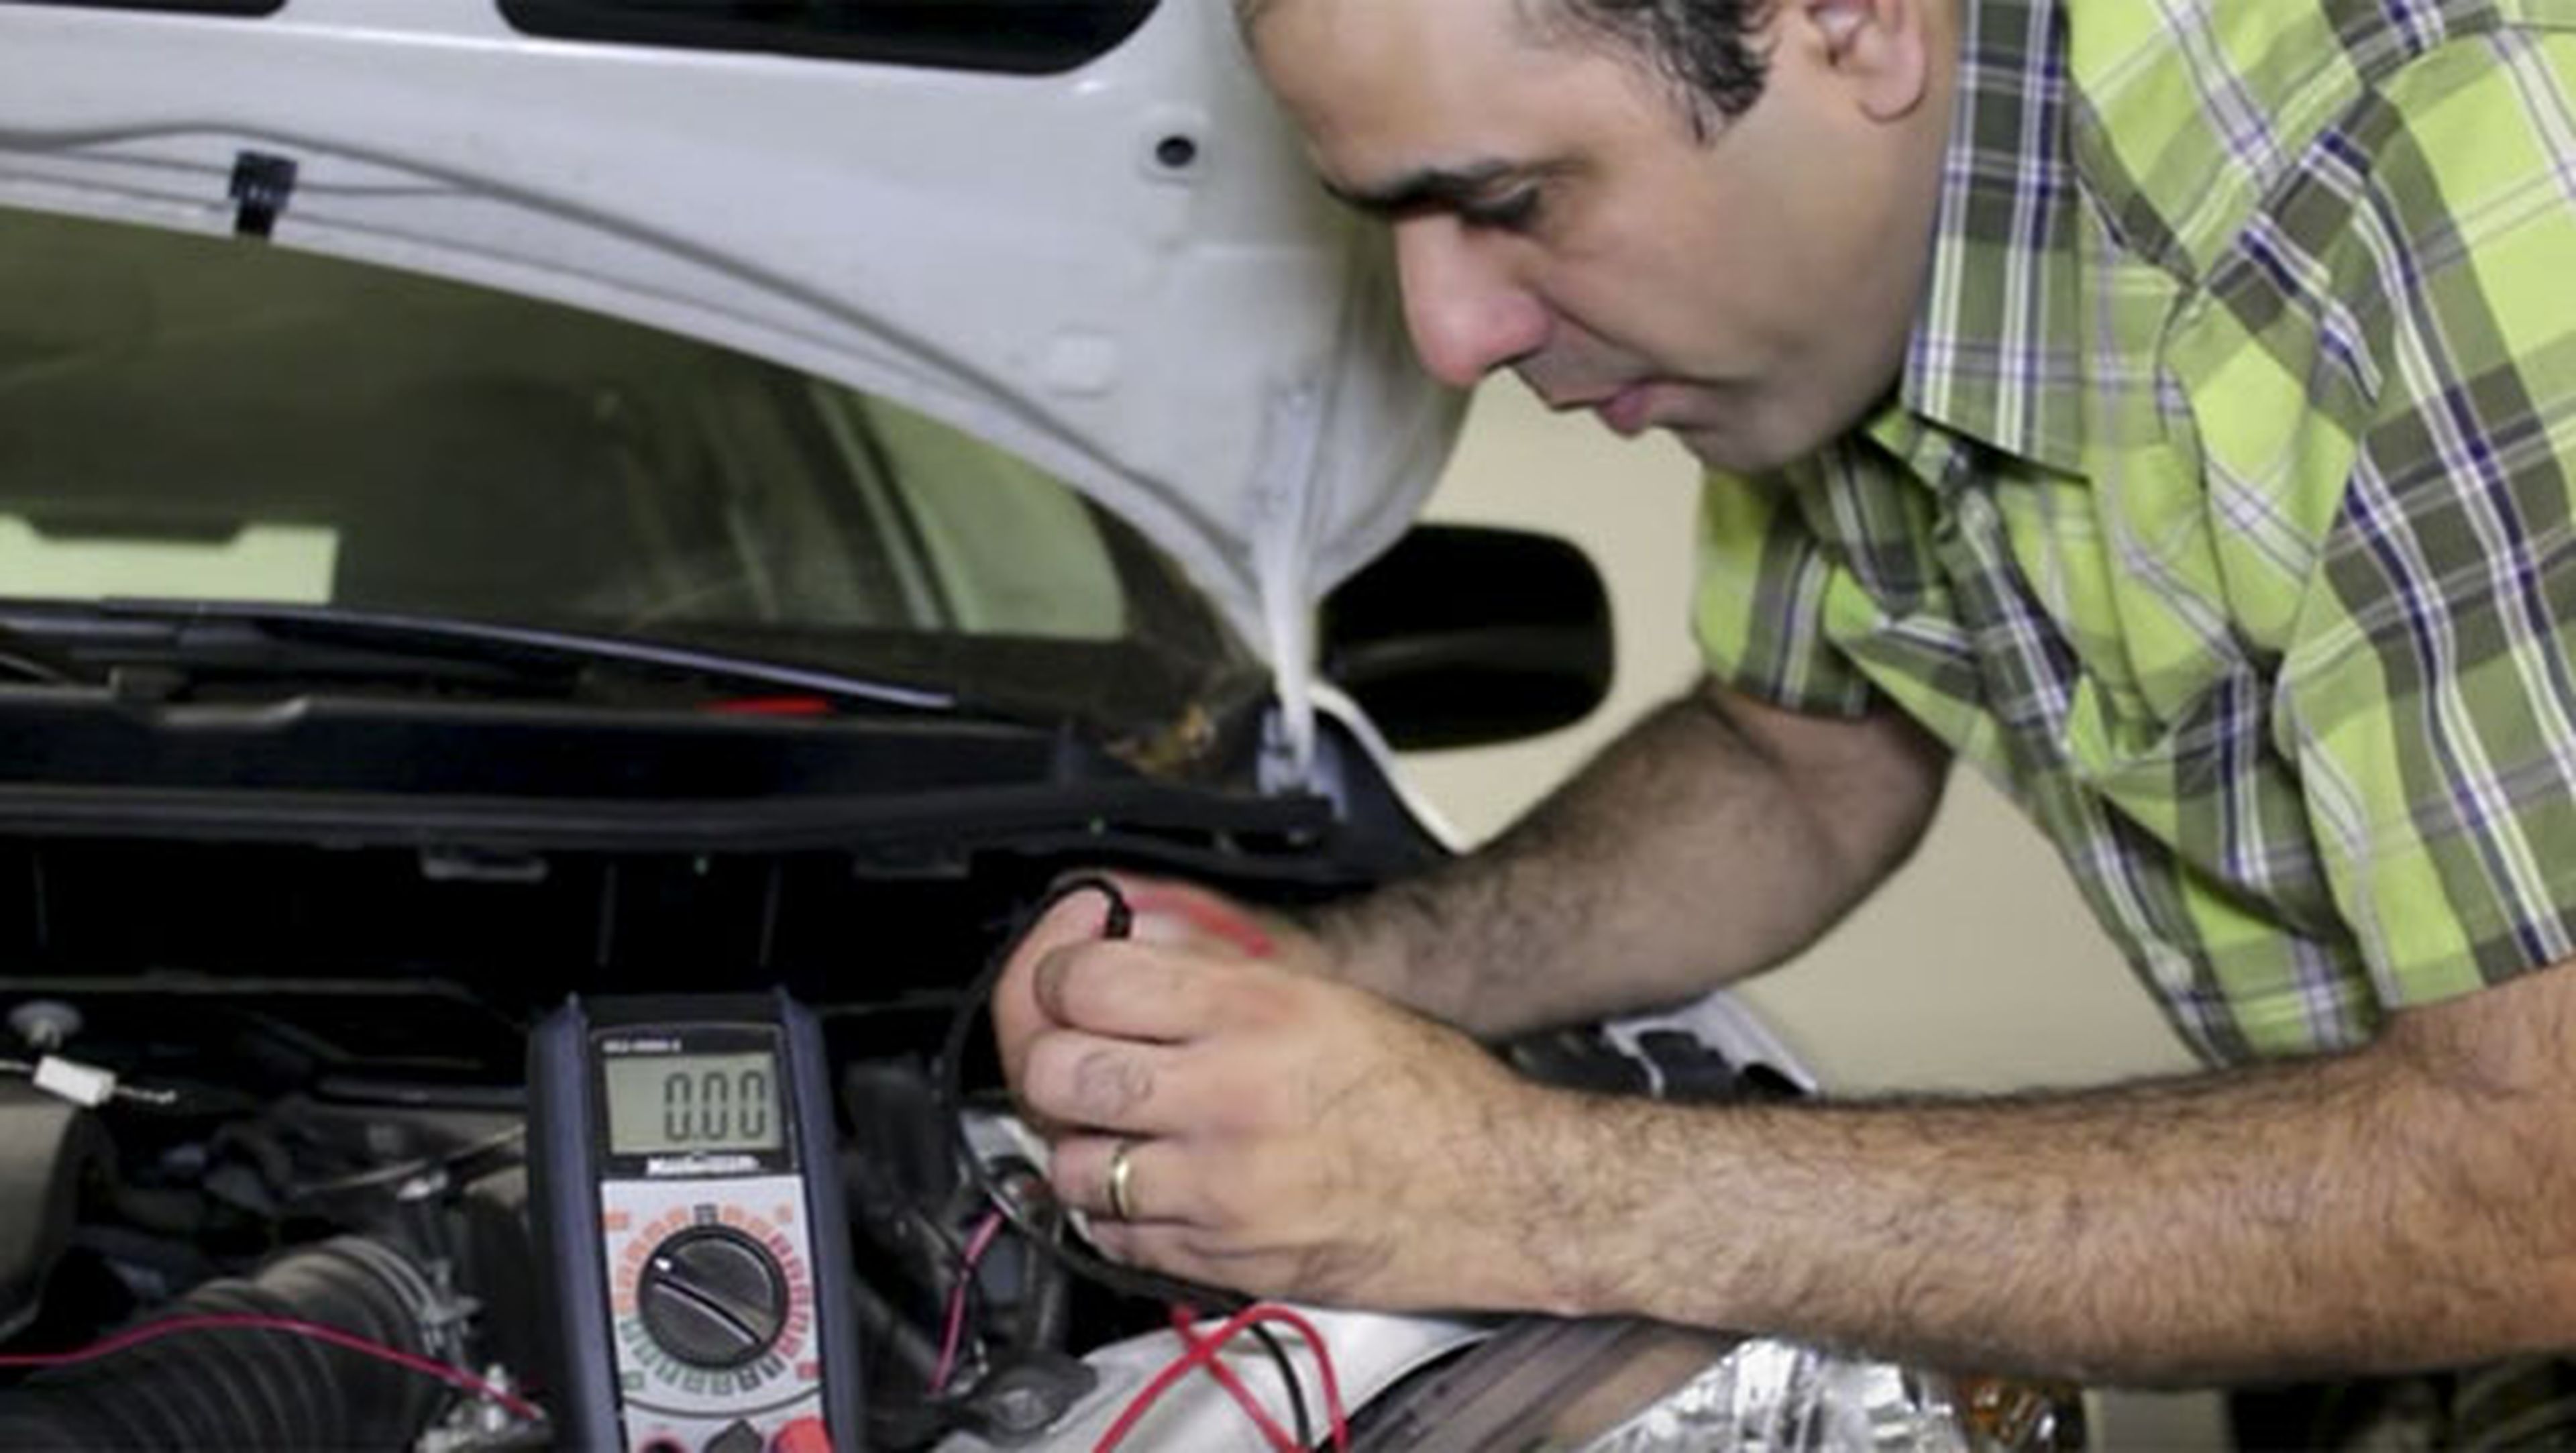 Arrancar el coche con pilas sí es posible, según este vídeo